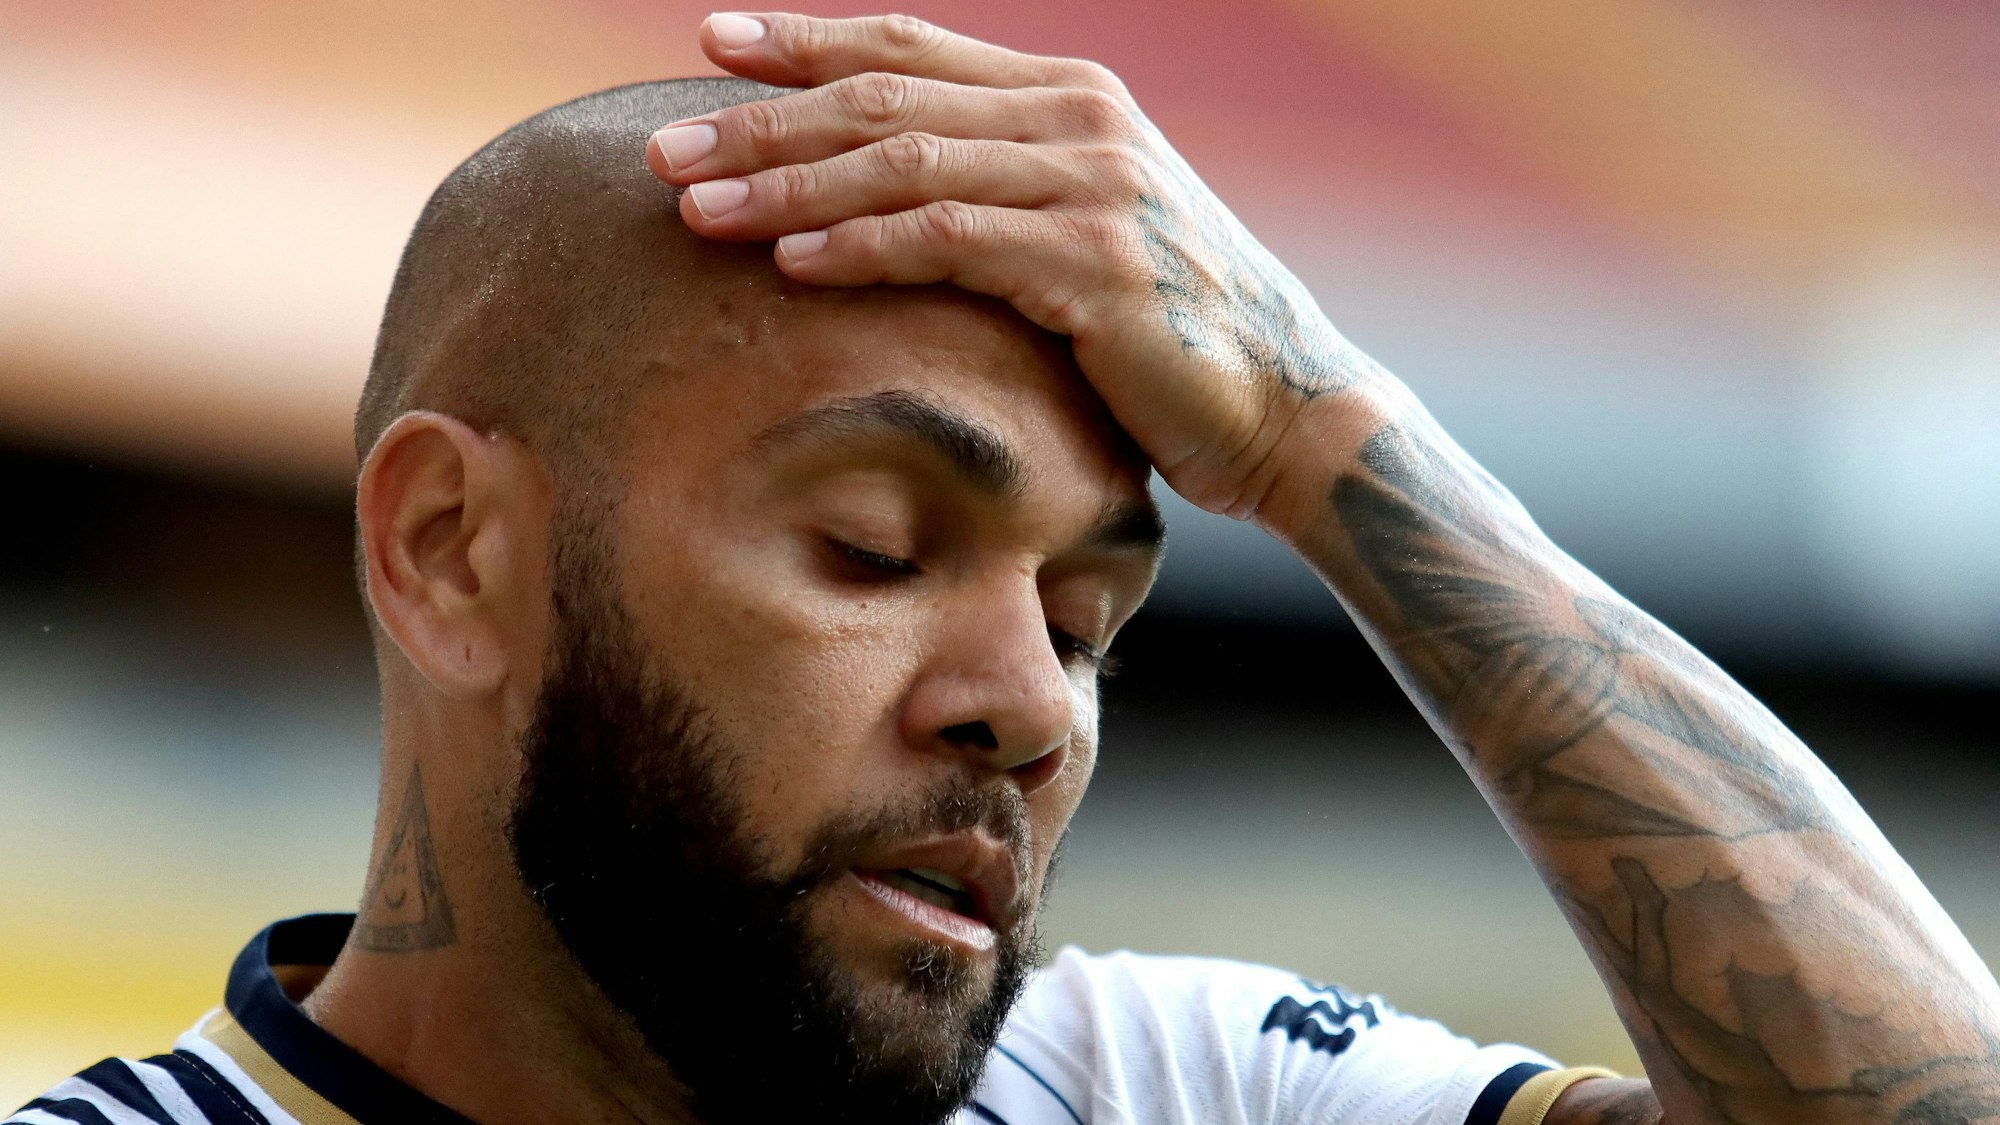 Dani Alves fasst sich in einem Spiel resigniert an den Kopf. Alves sitzt wegen des Vorwurfs eines sexuellen Übergriffs aktuell in Spanien in Untersuchungshaft.